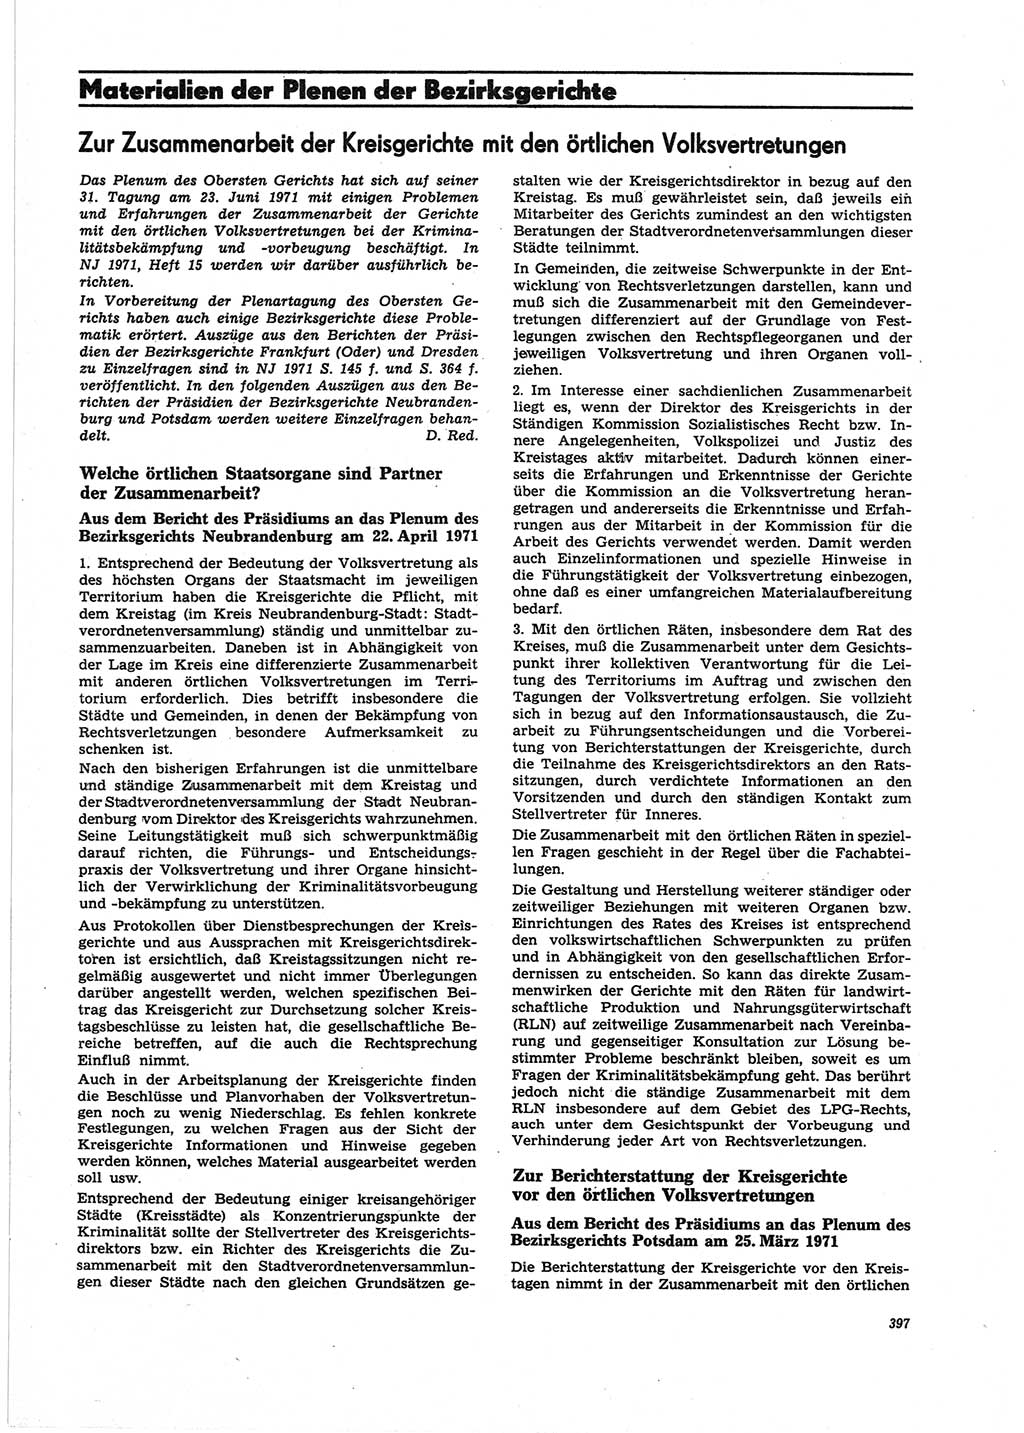 Neue Justiz (NJ), Zeitschrift für Recht und Rechtswissenschaft [Deutsche Demokratische Republik (DDR)], 25. Jahrgang 1971, Seite 397 (NJ DDR 1971, S. 397)